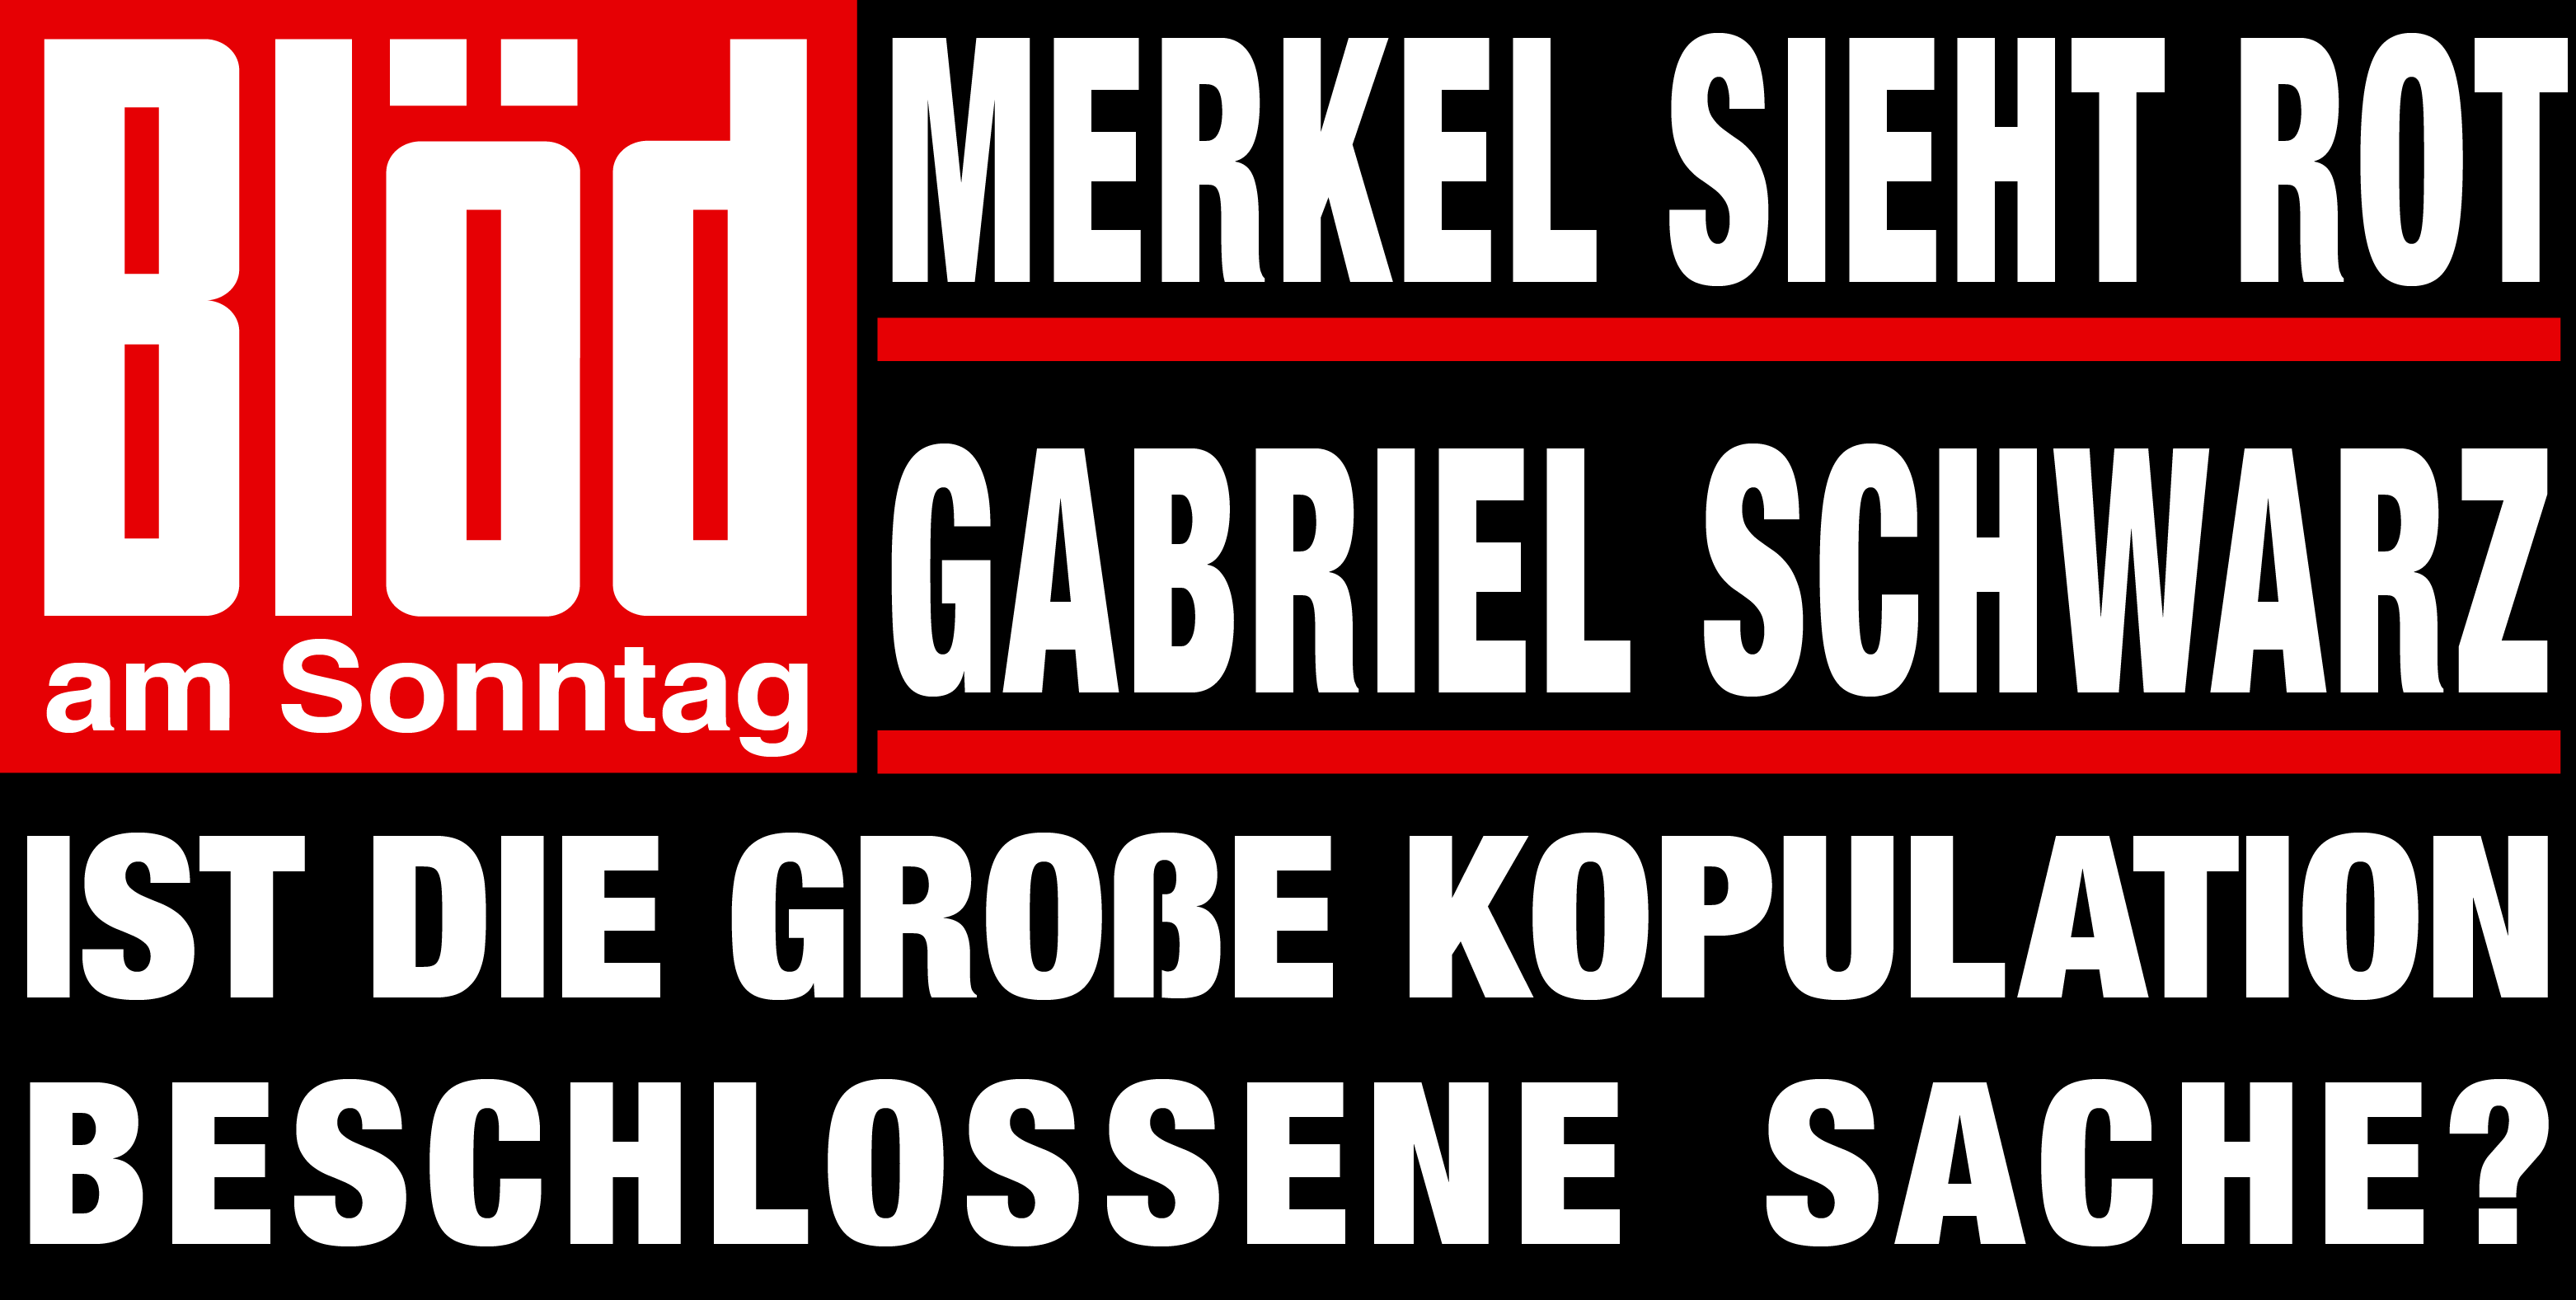 Bloed-am-Sonntag-Merkel-rot-Gabriel-schwarz